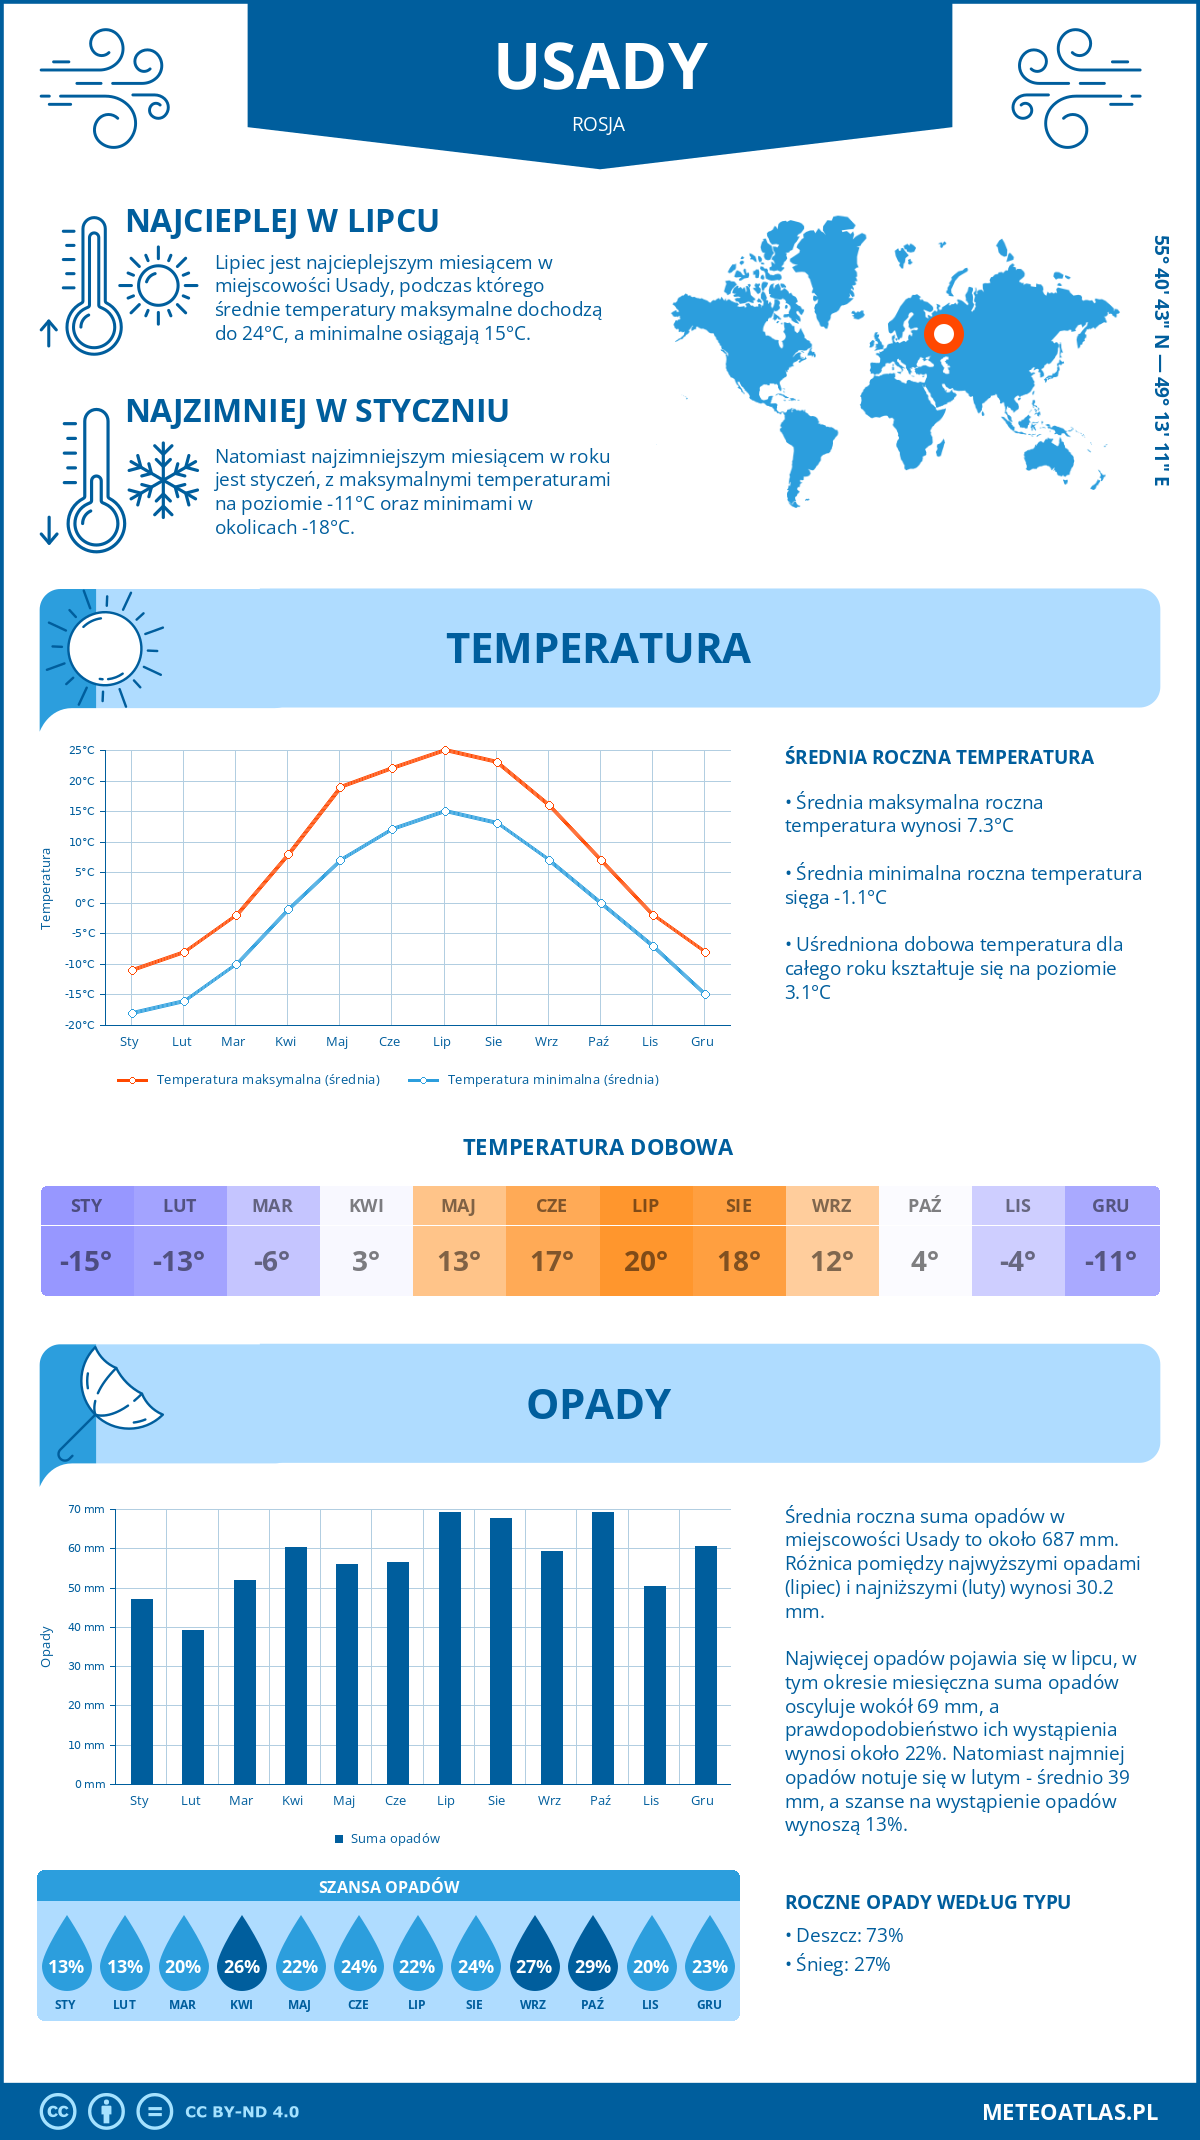 Pogoda Usady (Rosja). Temperatura oraz opady.